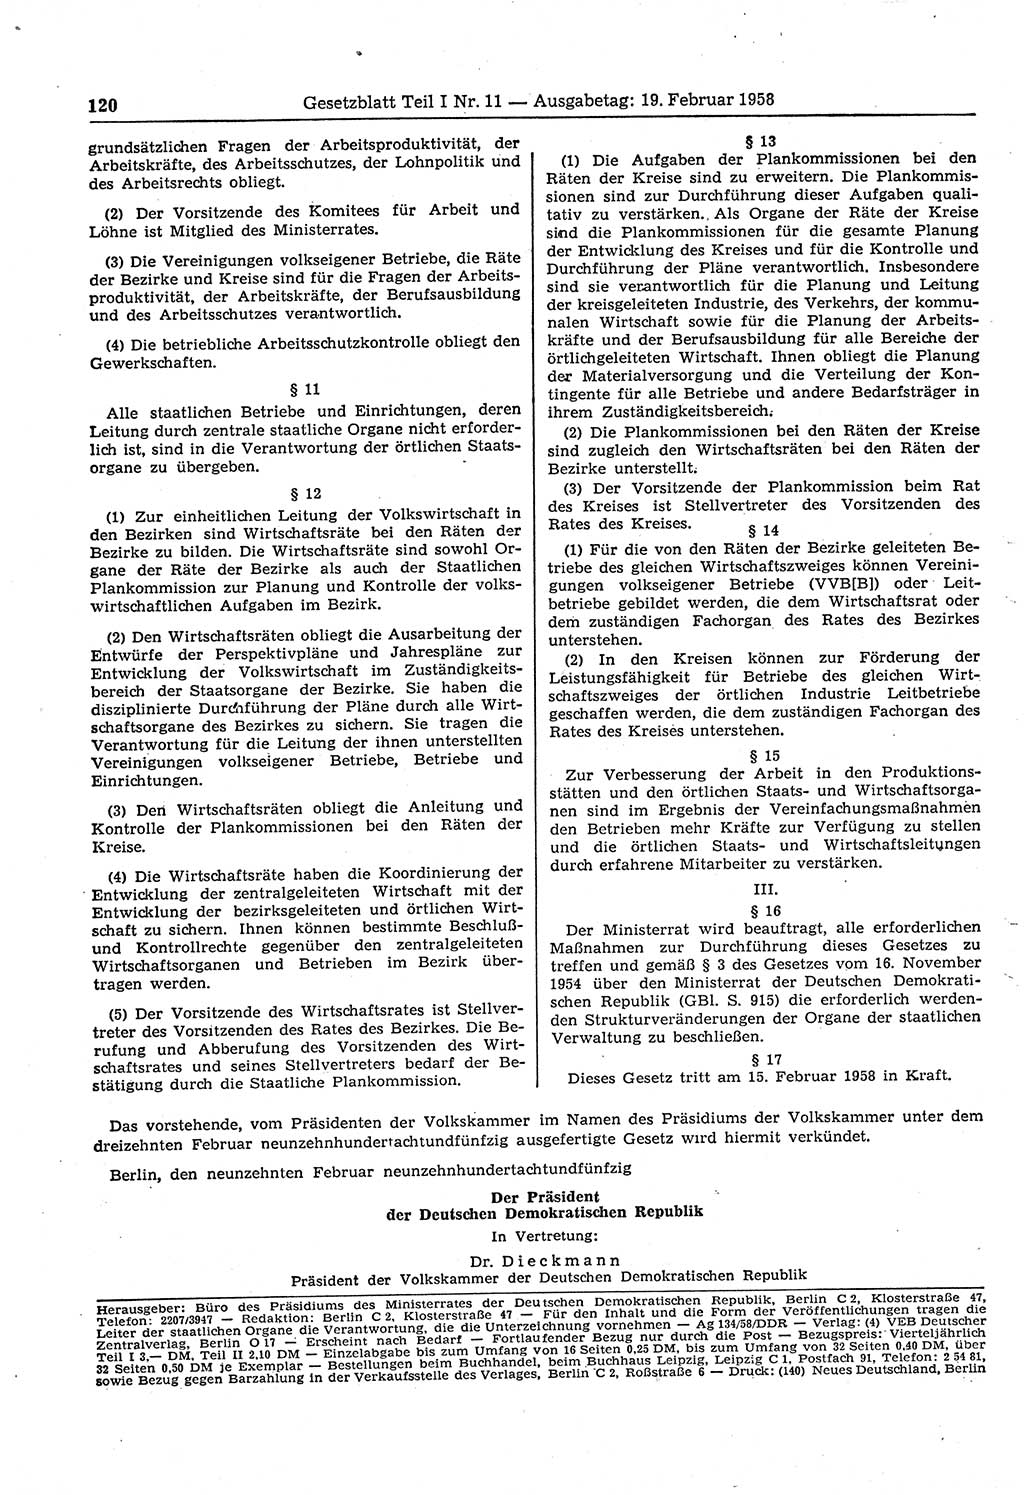 Gesetzblatt (GBl.) der Deutschen Demokratischen Republik (DDR) Teil Ⅰ 1958, Seite 120 (GBl. DDR Ⅰ 1958, S. 120)